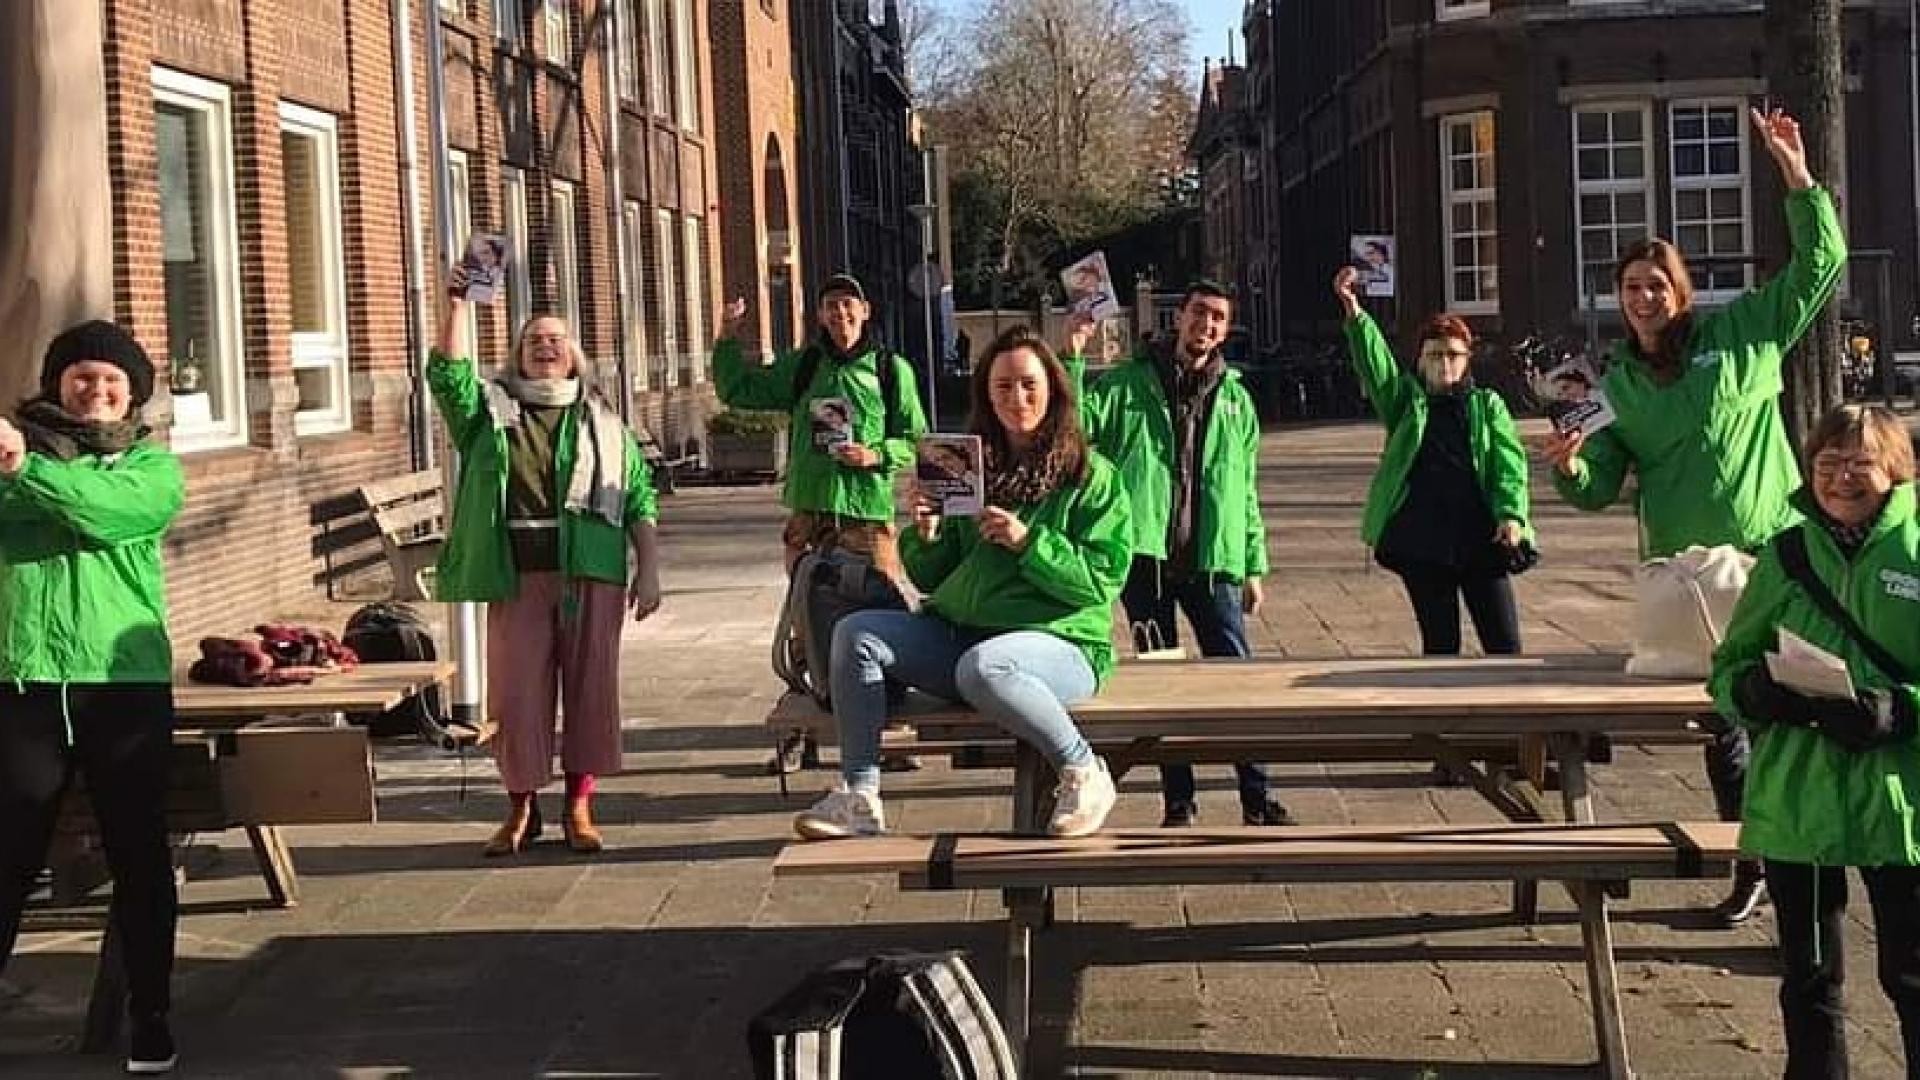 Vrijwilligers met GroenLinks-jassen aan en flyers in de hand